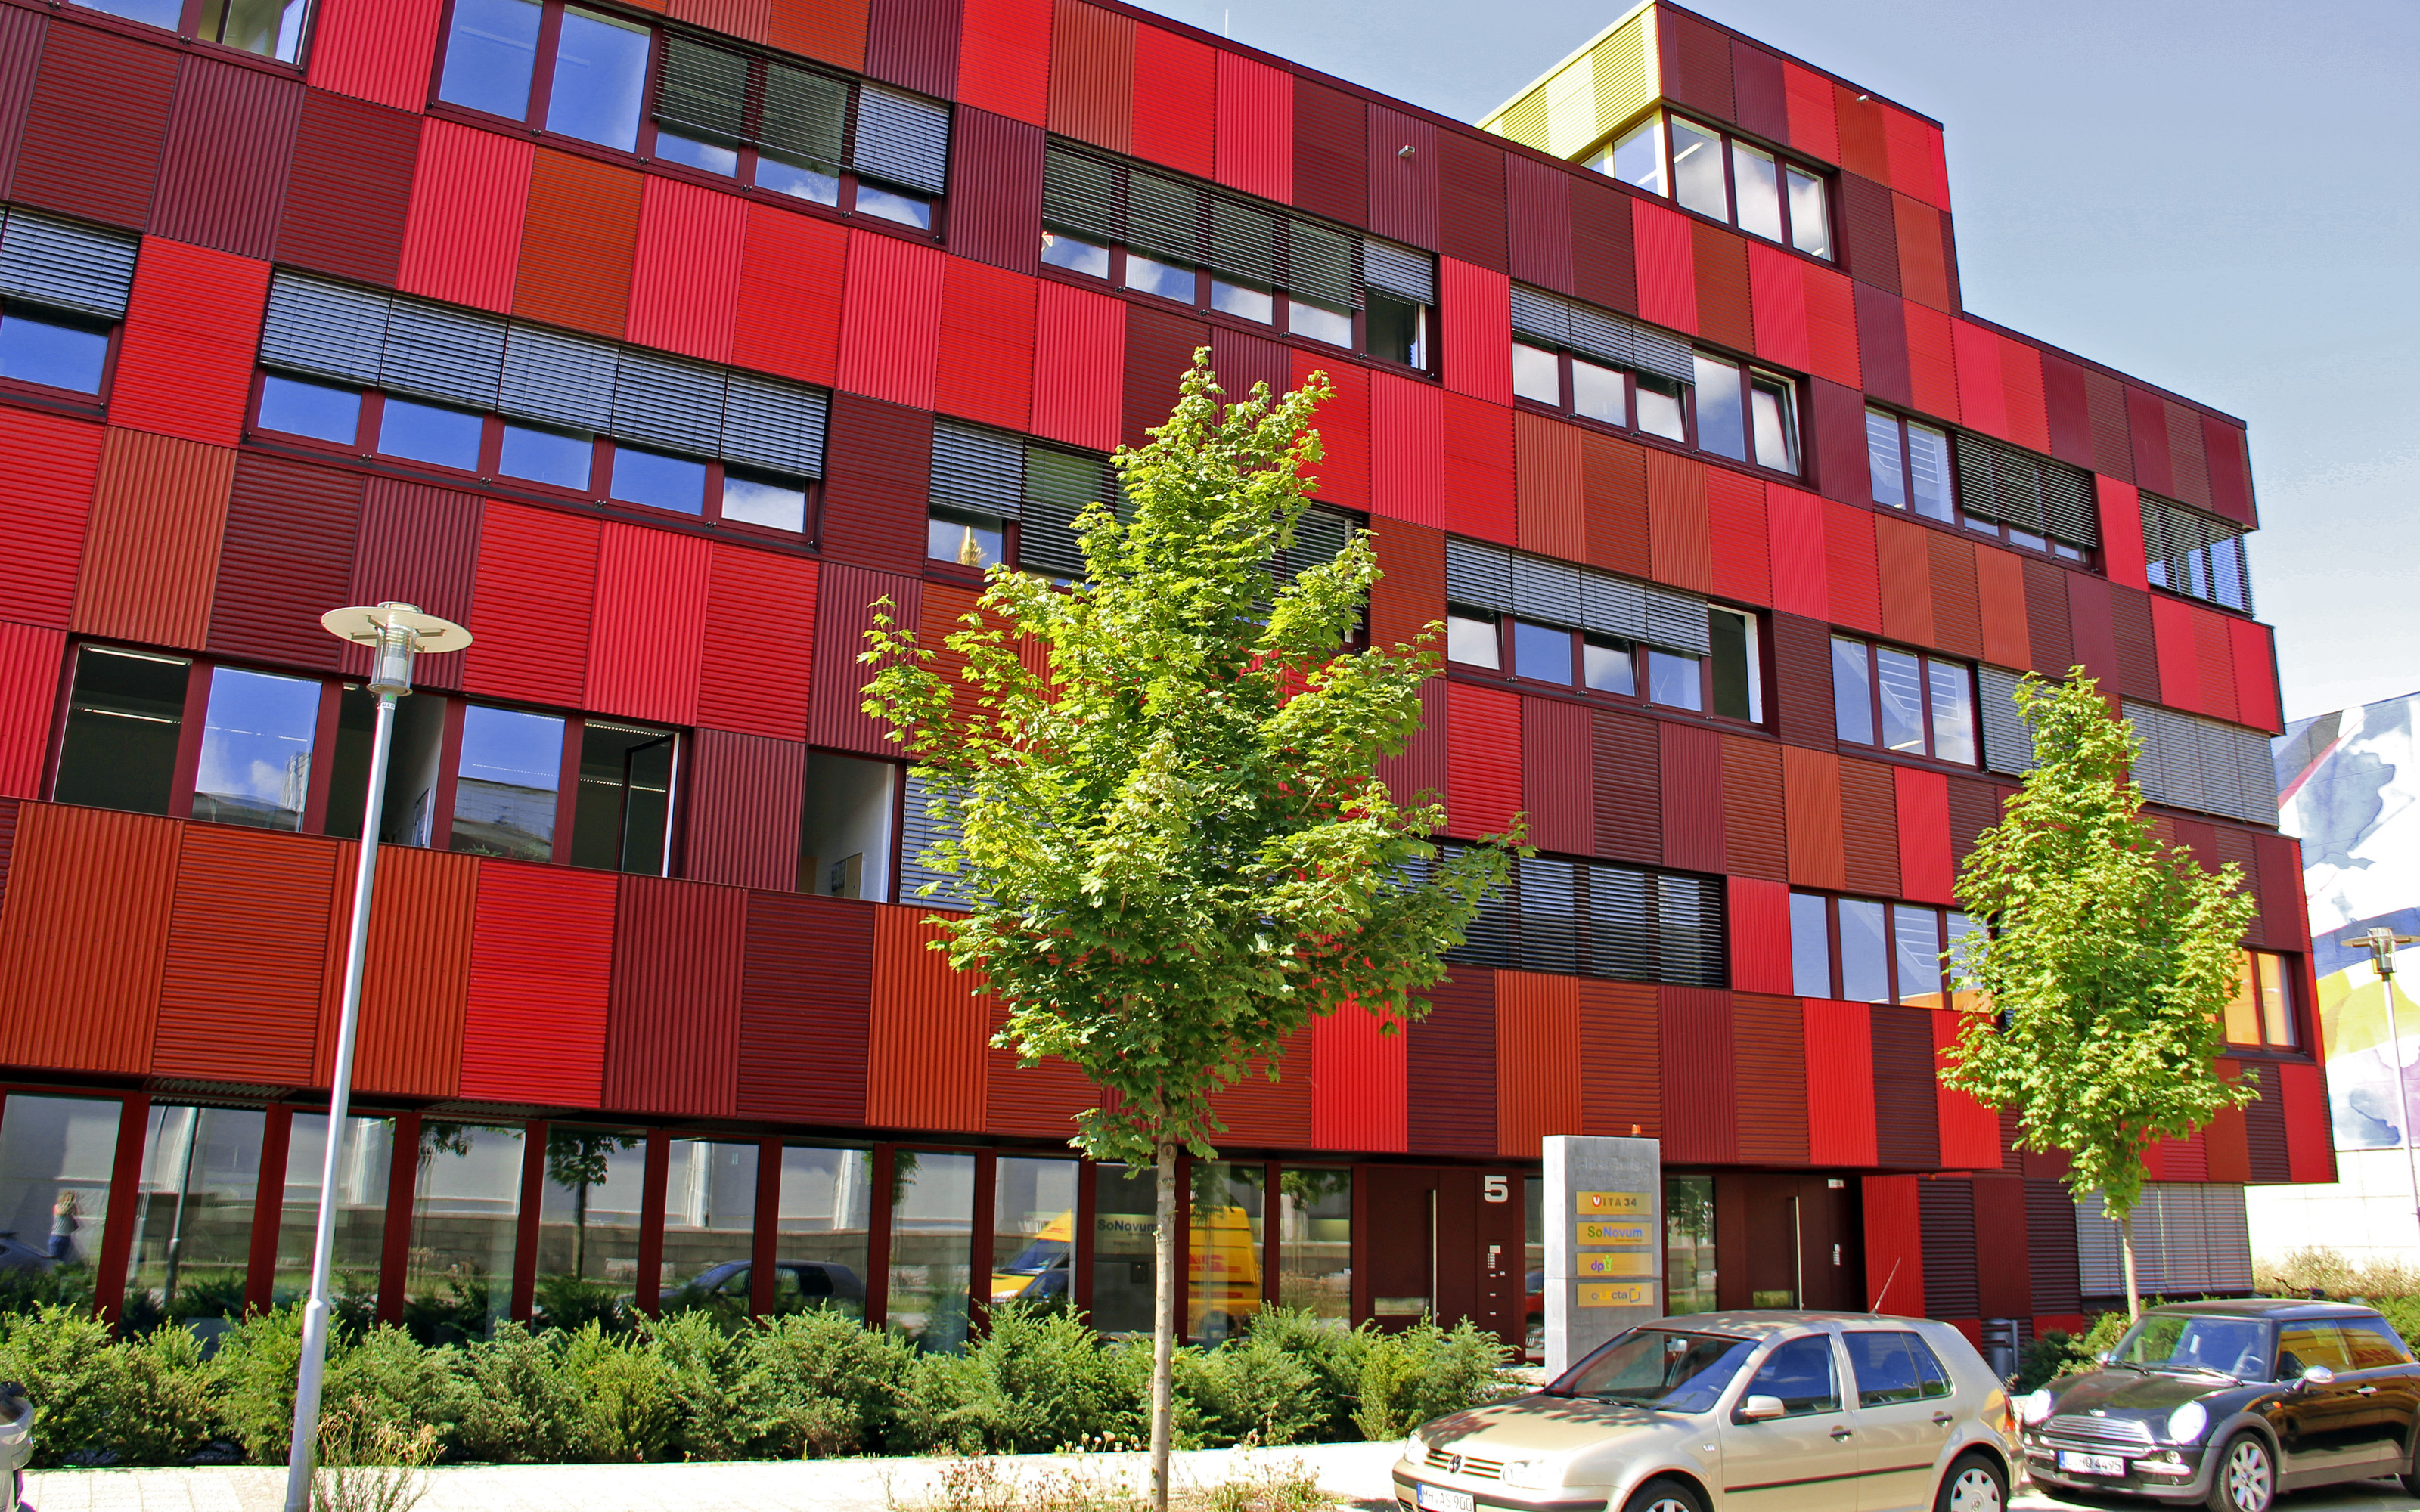 Gebäude mit roter Fassade und kleine Bäume